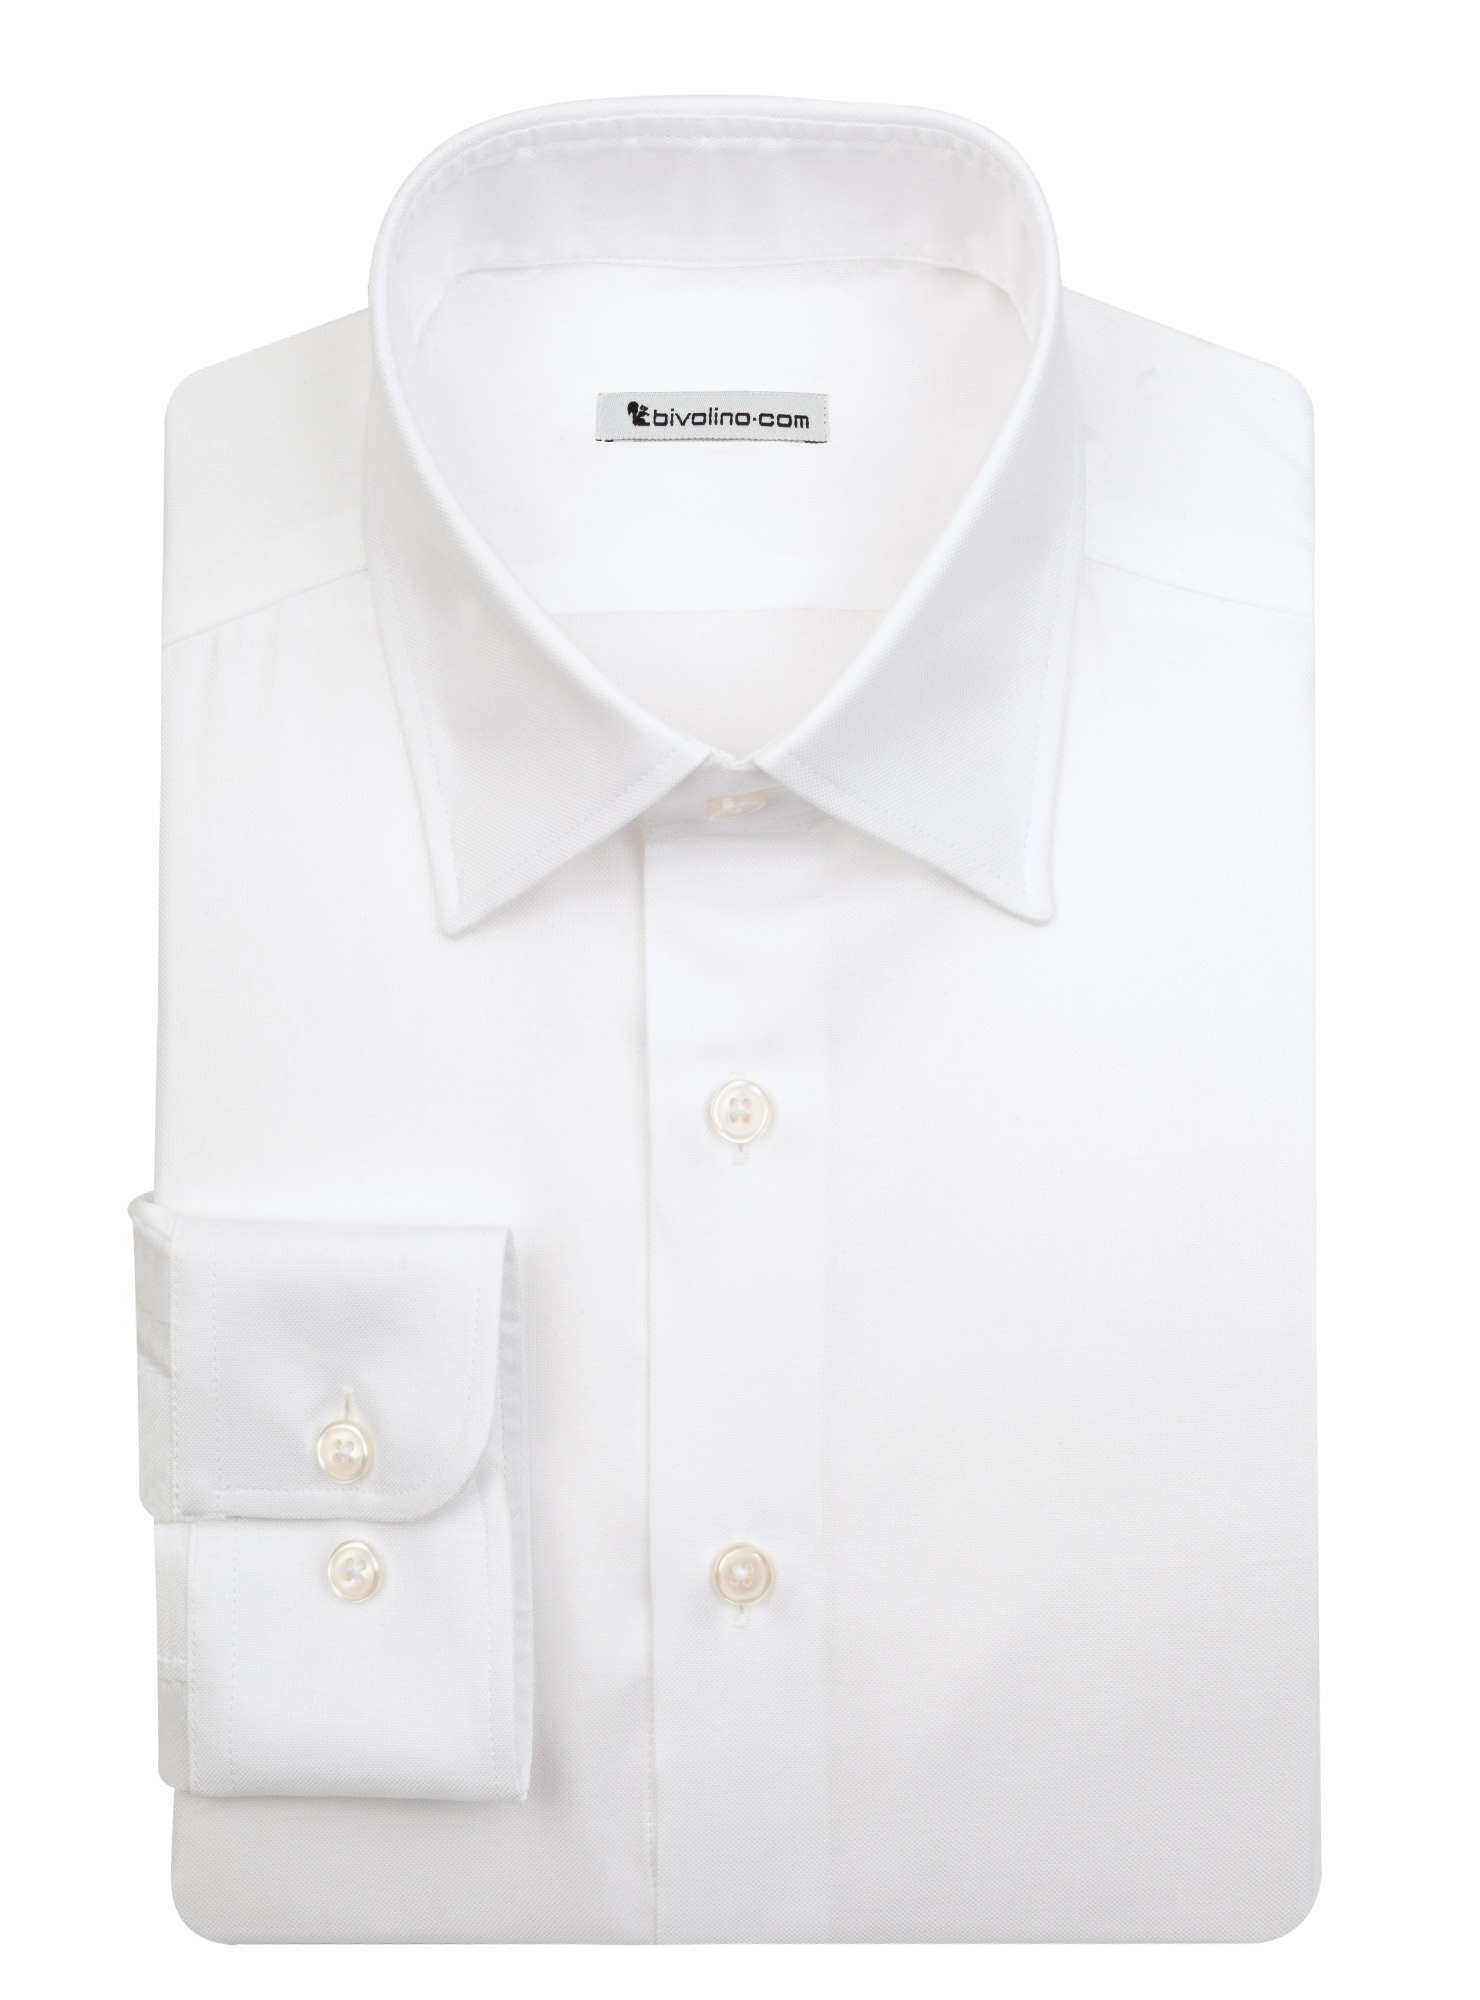 TREVISO - Oxford de algodón blanco real camisa de hombre - LABA 2 